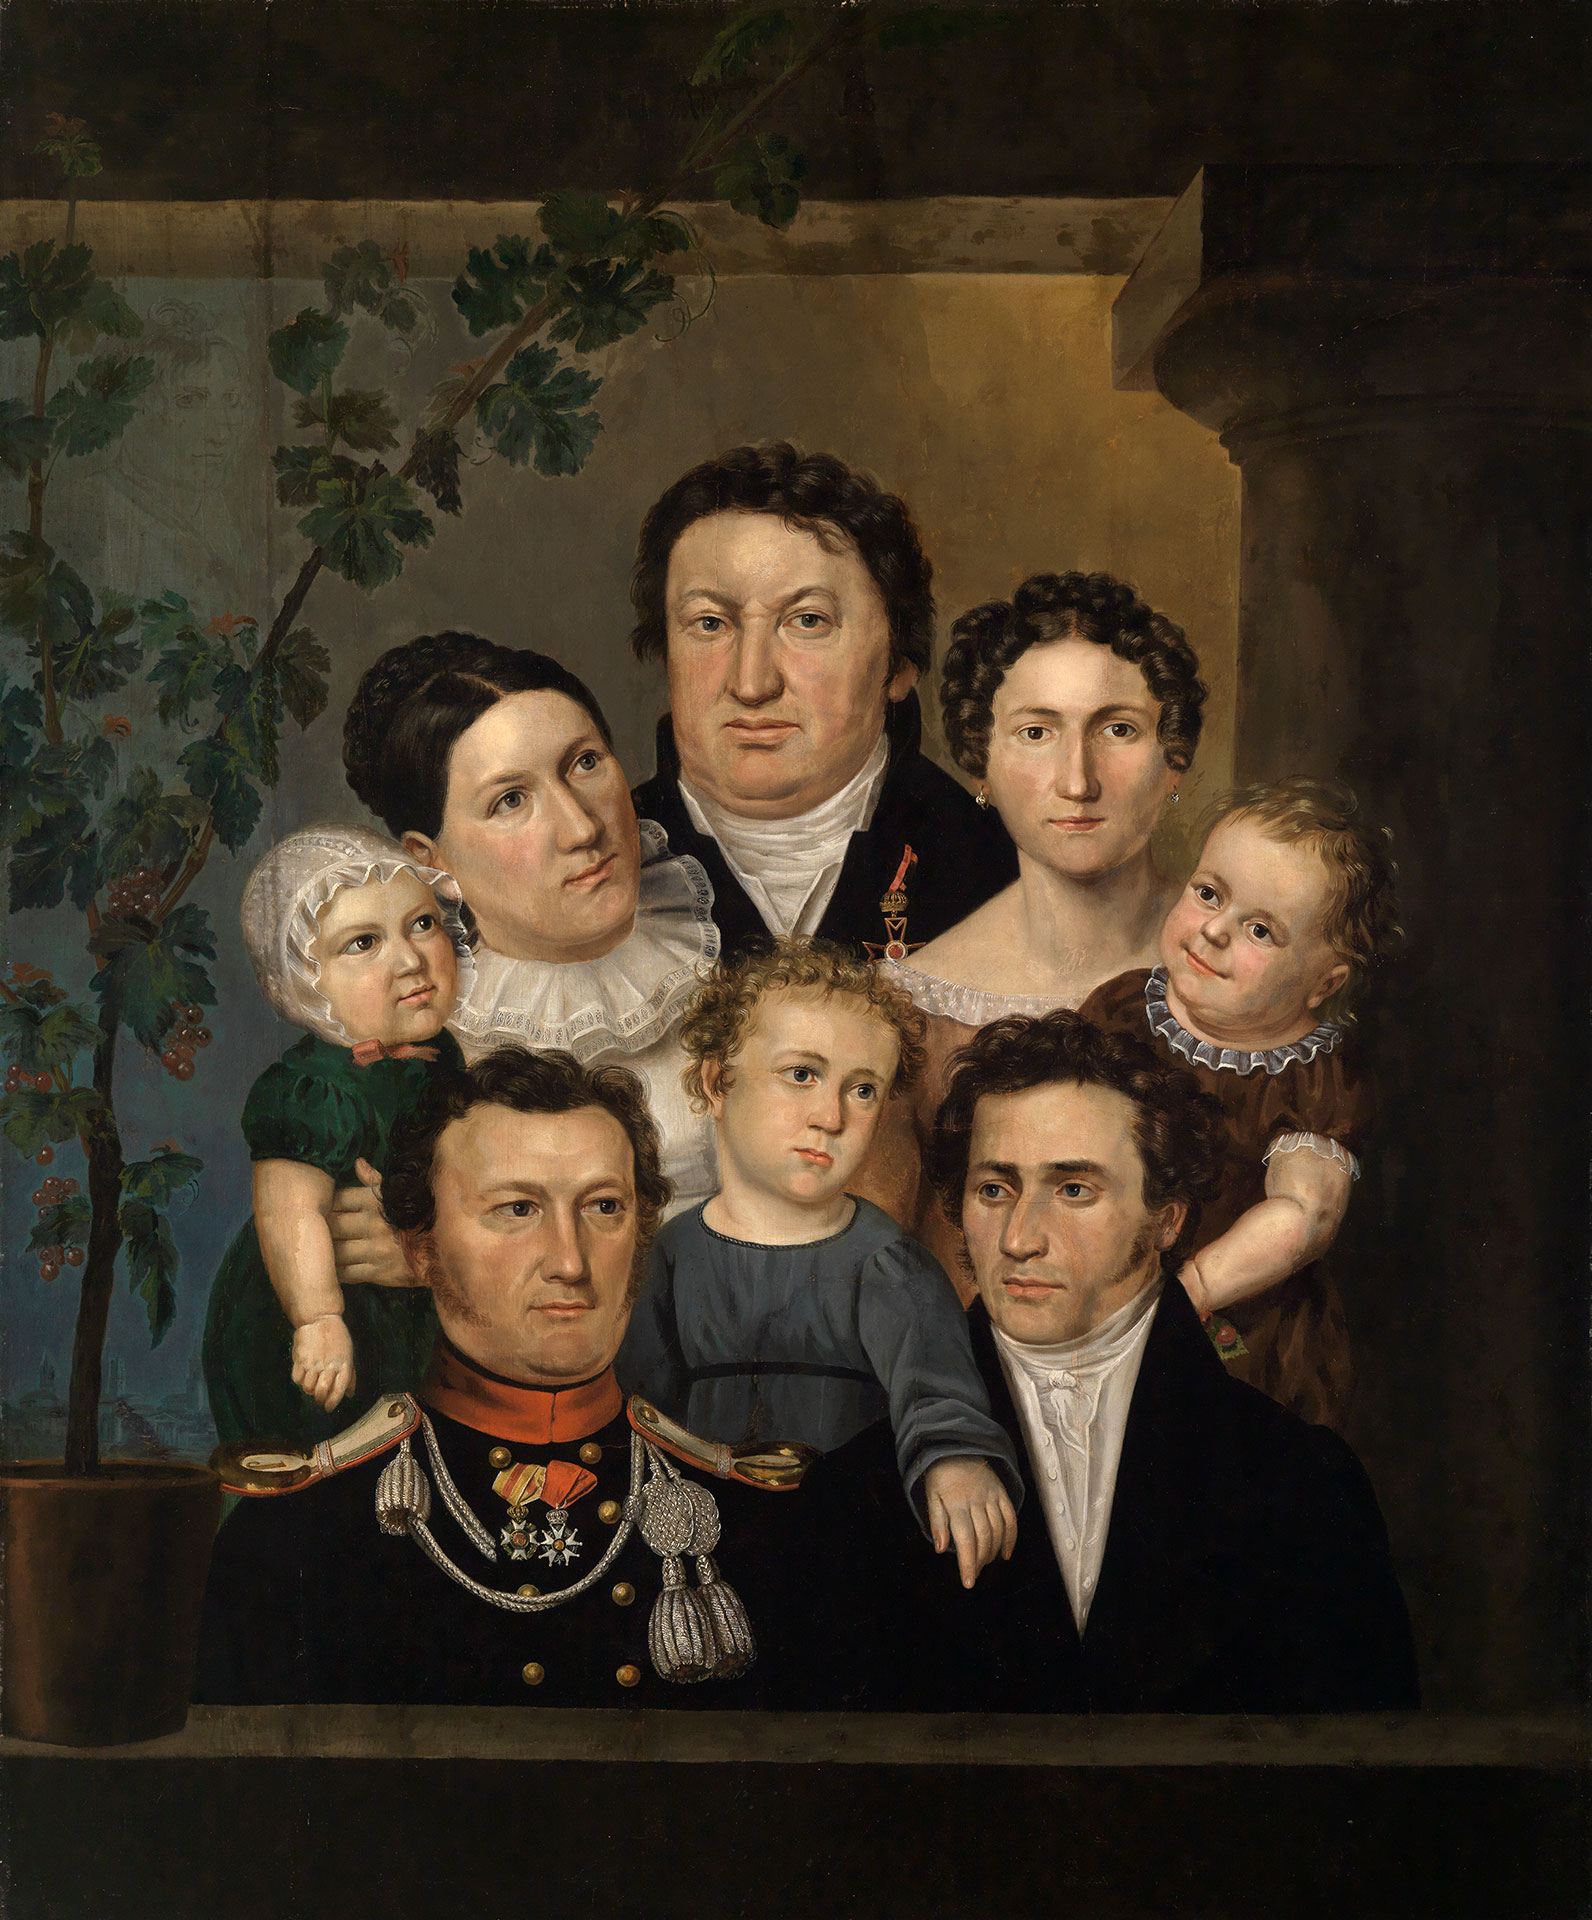 Abbildung des Werks "Weinbrenner und seine Familie" von Feodor Iwanowitsch Kalmück ?, entstanden 1823. Die Abbildung zeigt eine dicht gedrängte Personengruppe. 